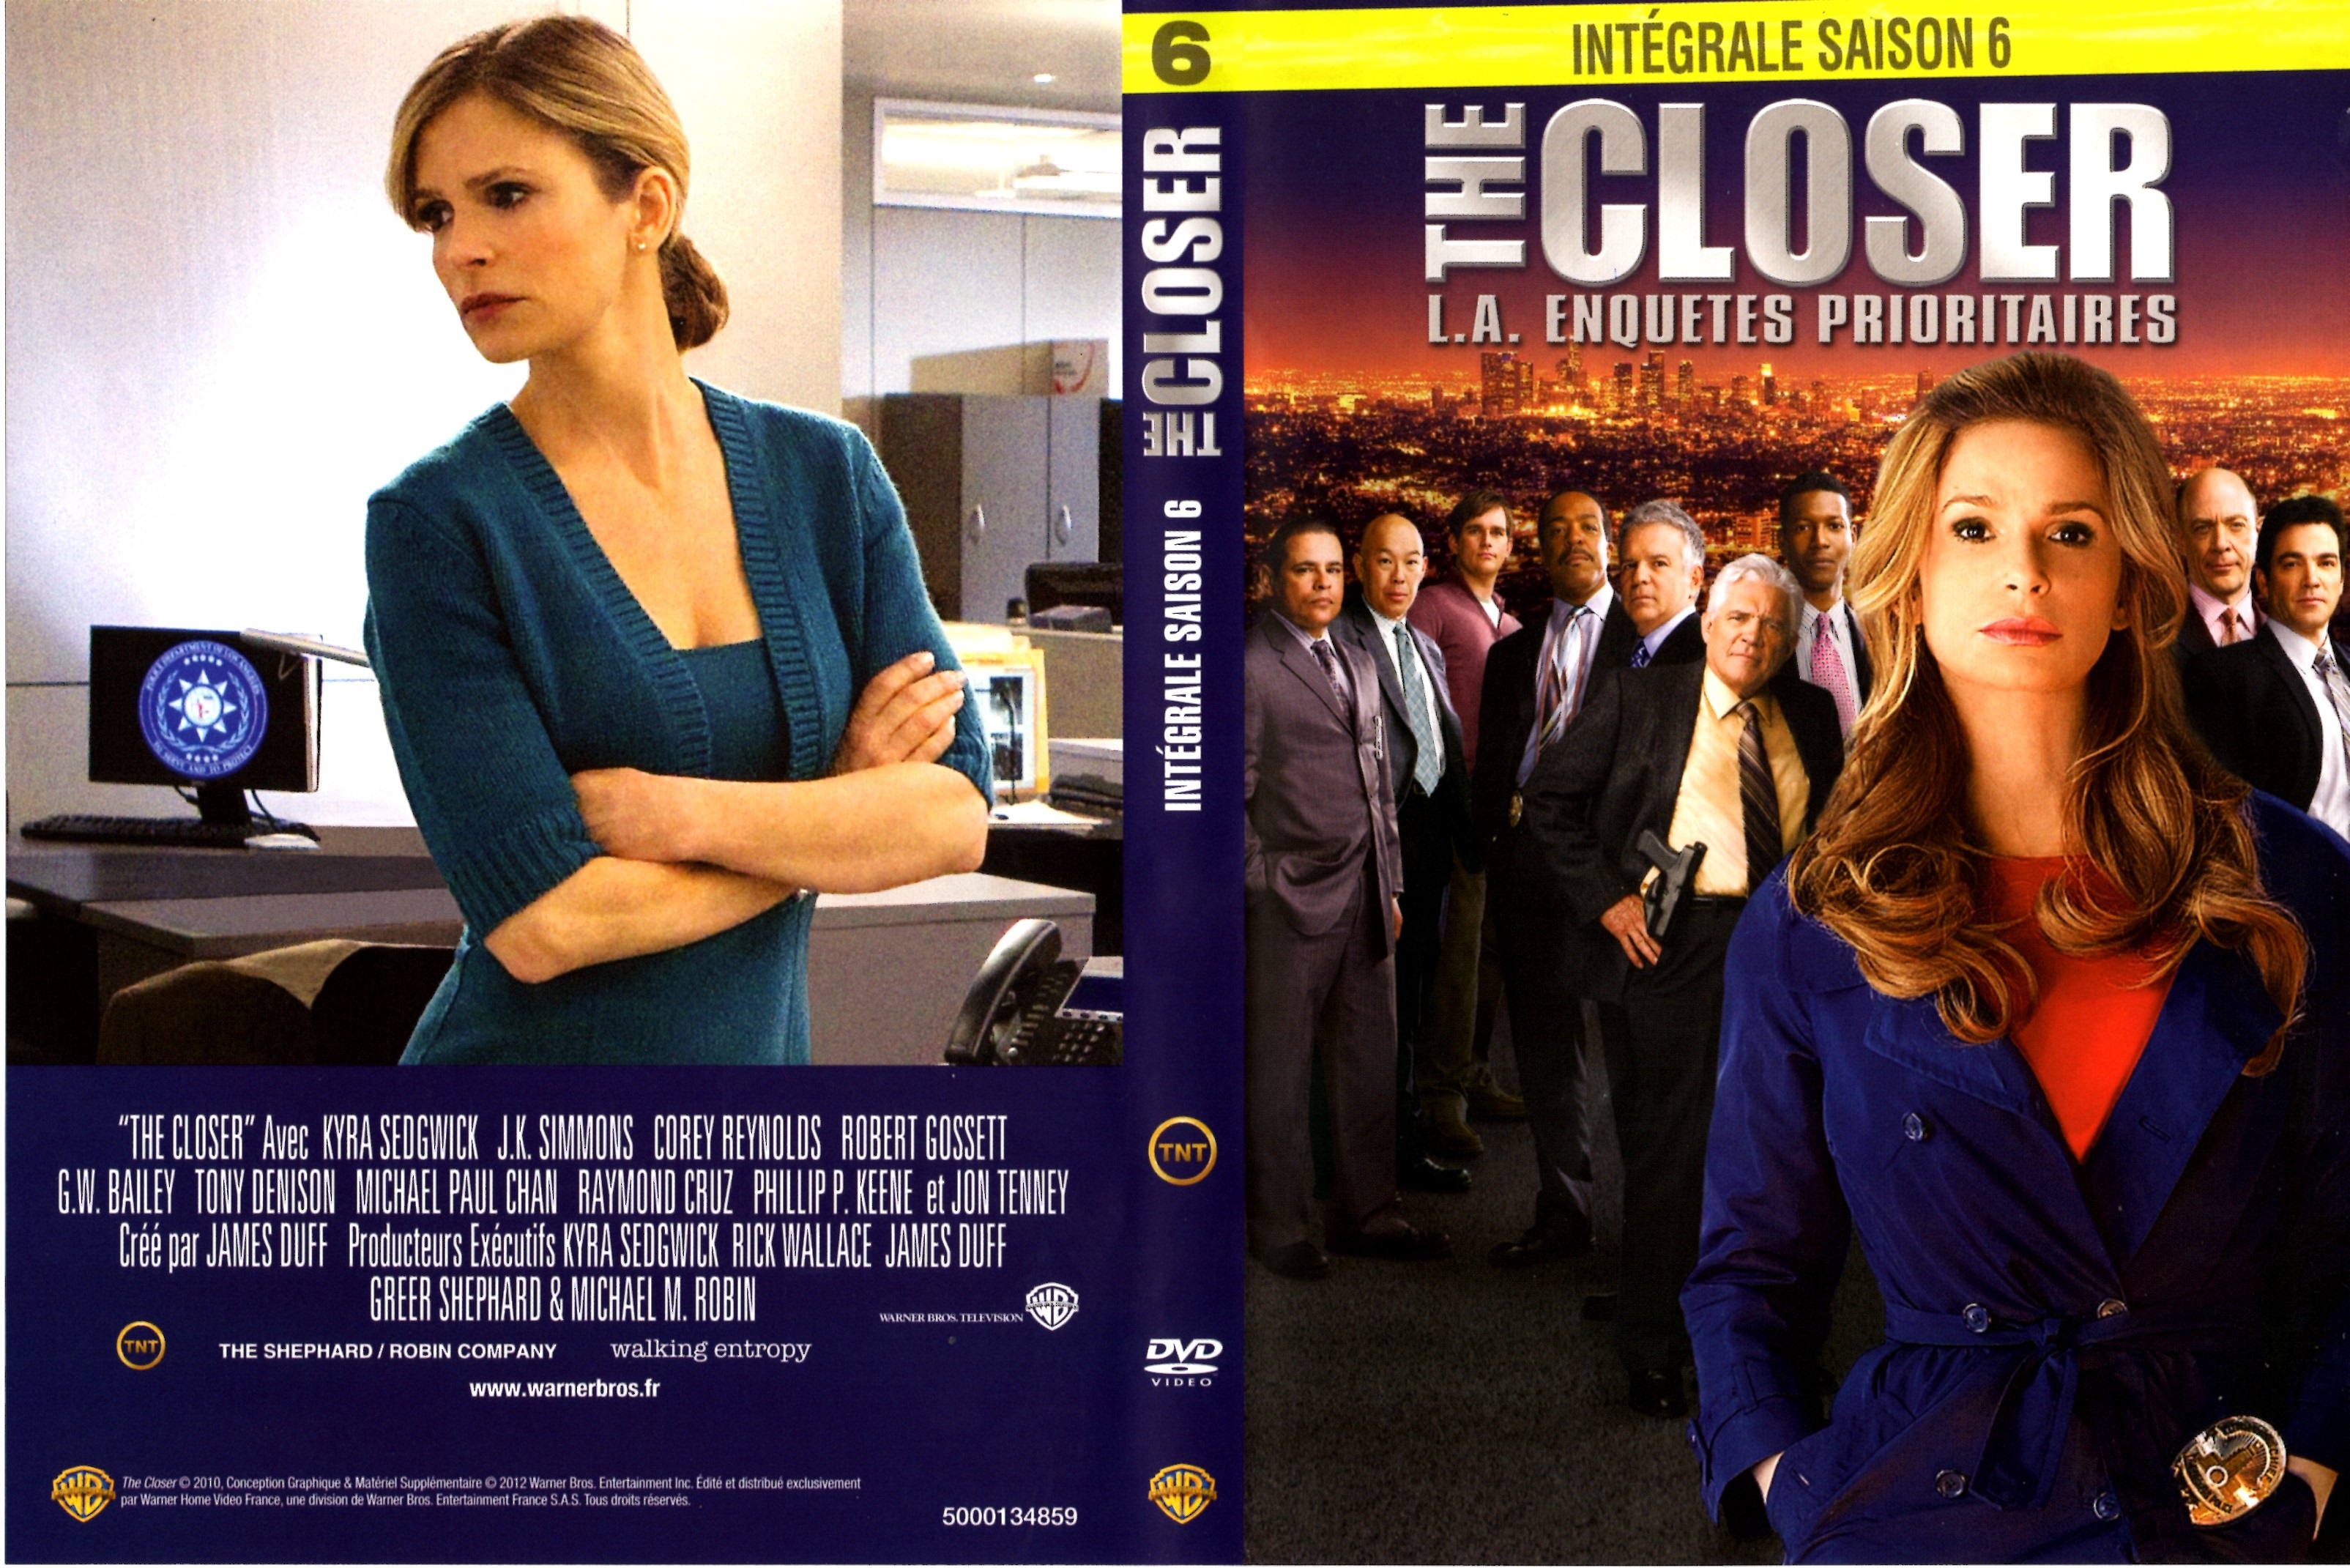 Jaquette DVD The Closer Saison 6